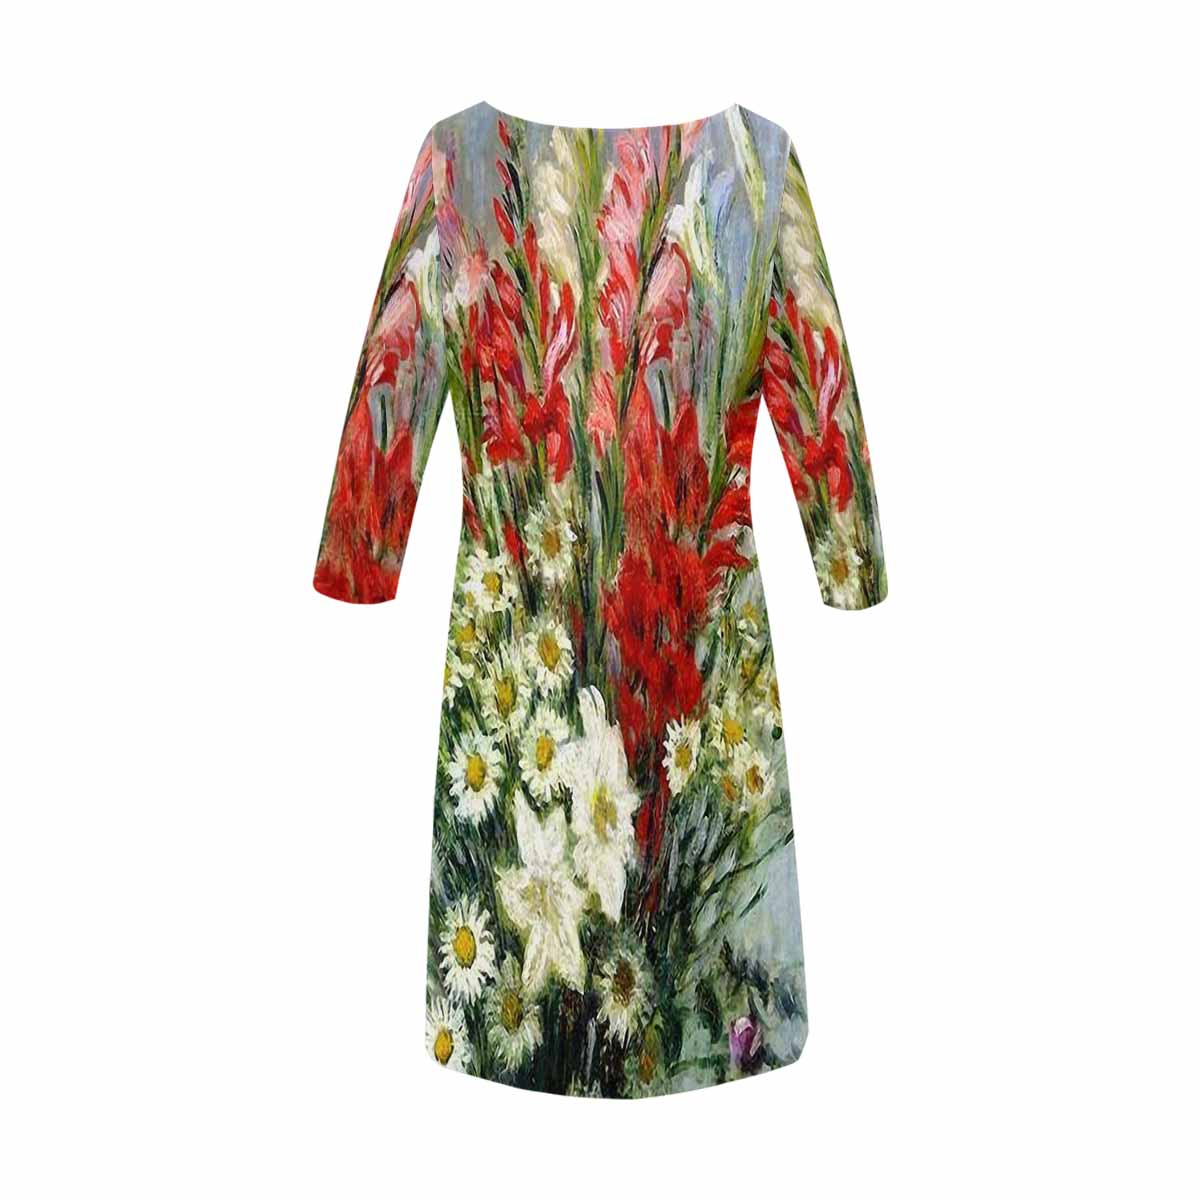 Vintage floral loose dress, model D29532 Design 43